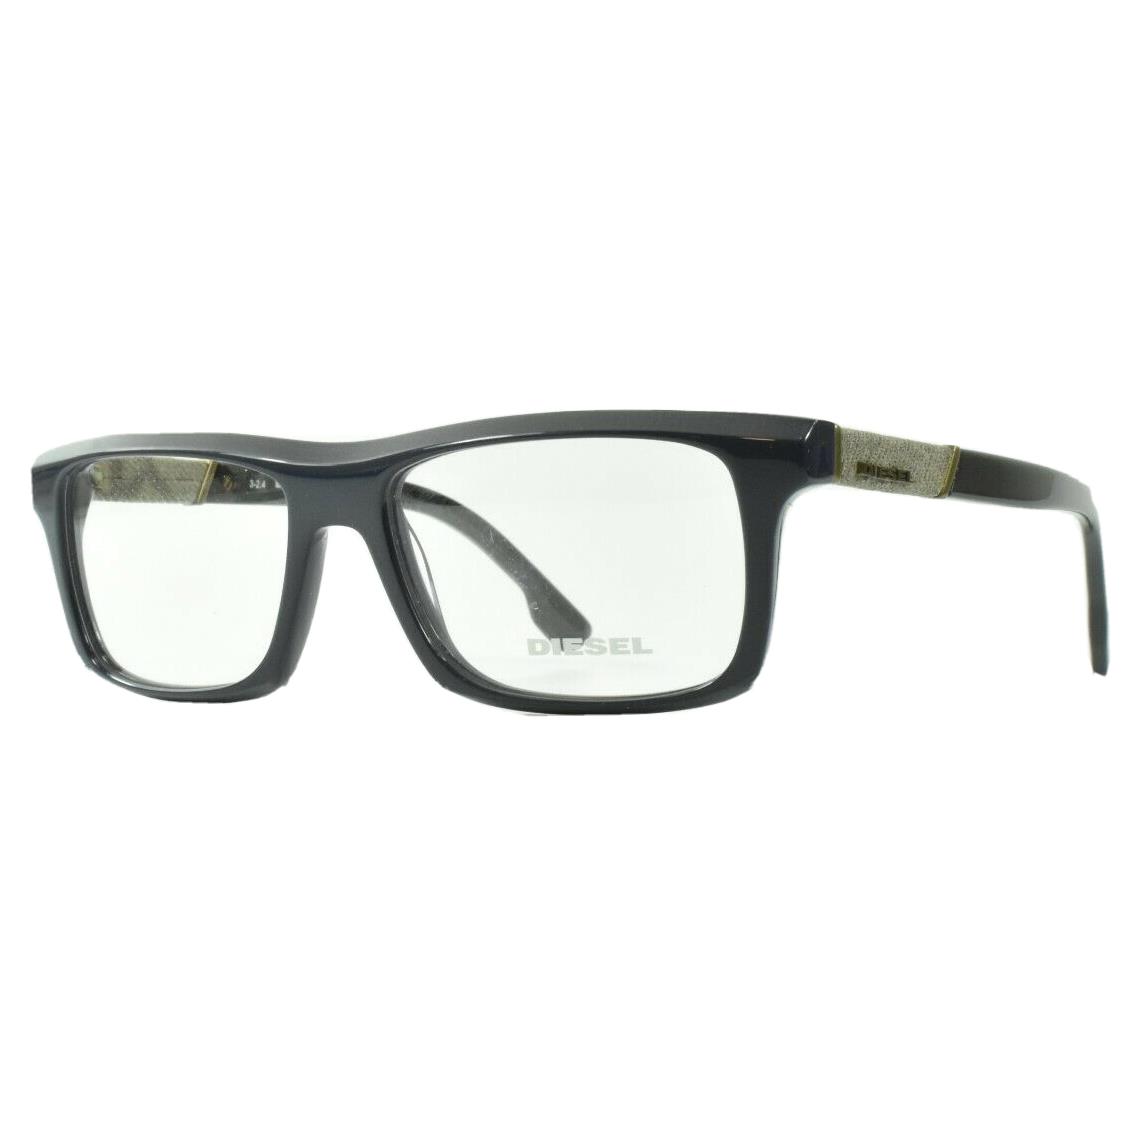 Diesel DL5084/V 090 Full Frame Rectangular Shiny Blue Optical Eyeglasses Mens